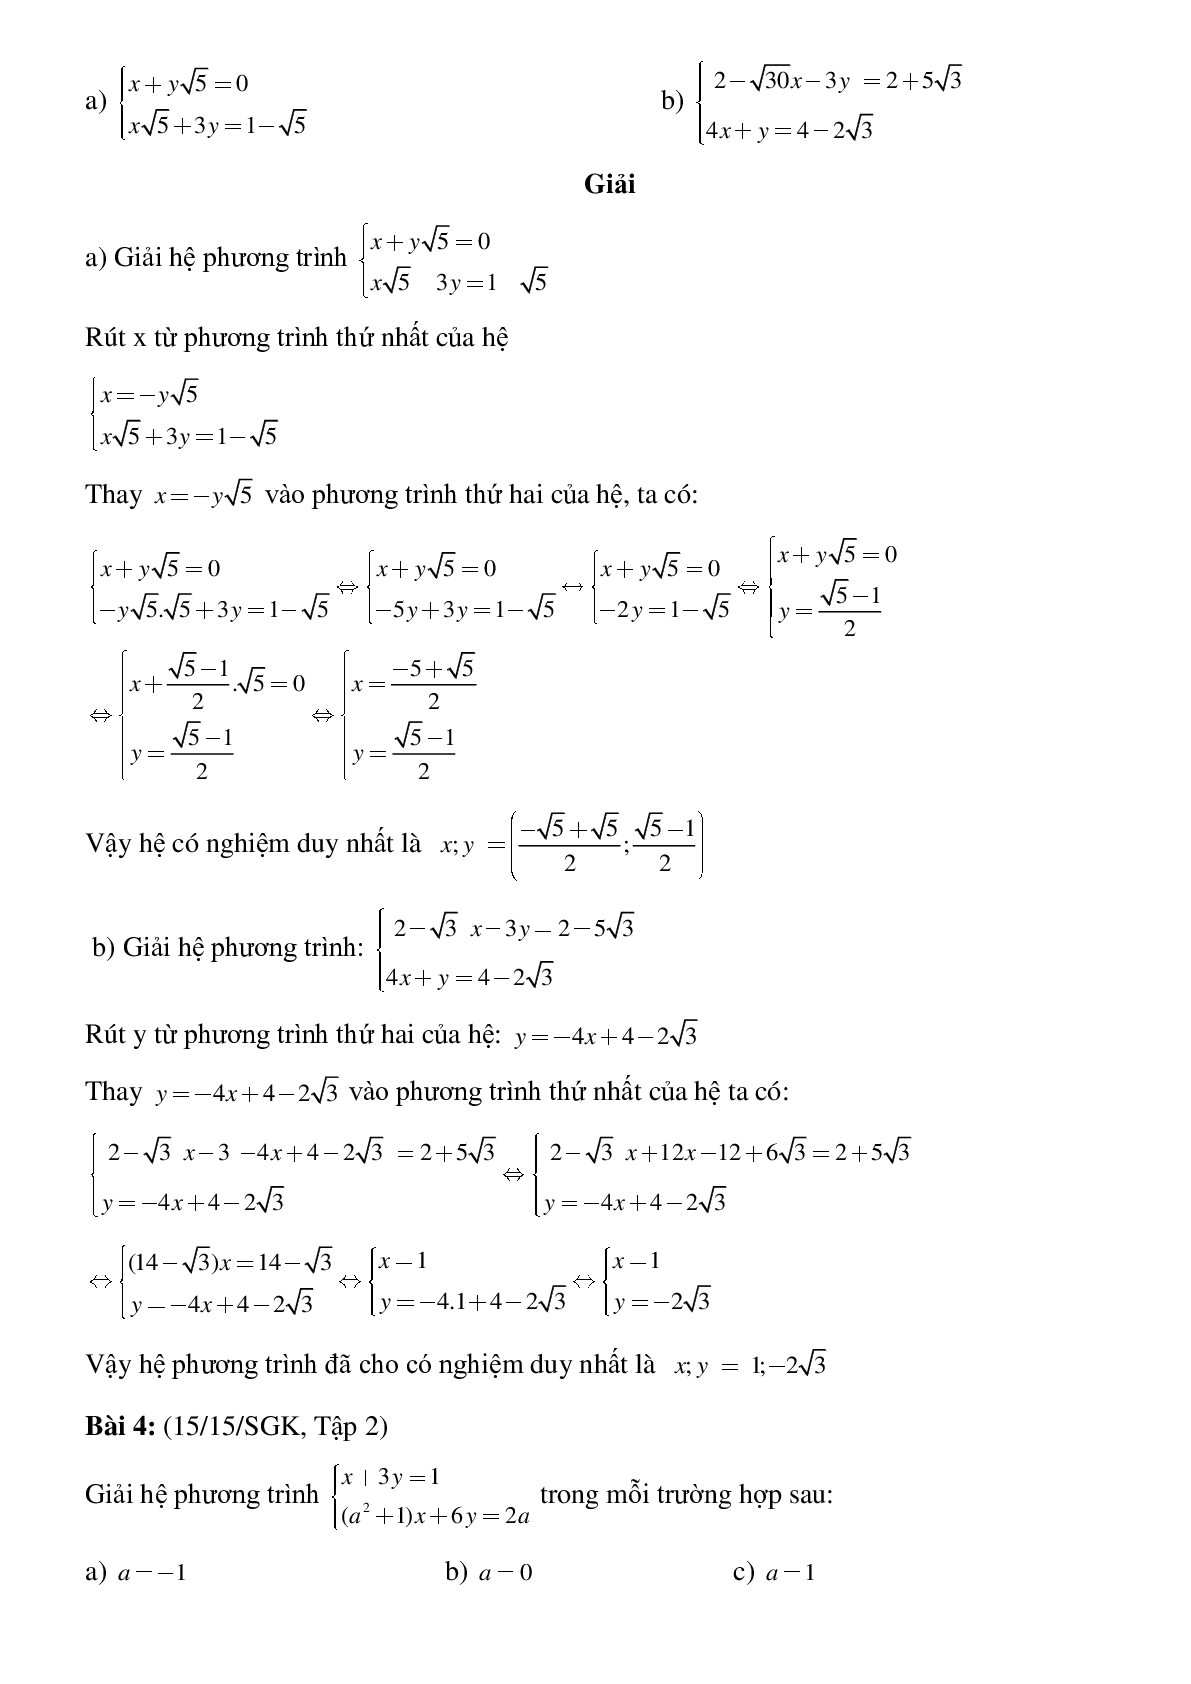 50 Bài tập Giải hệ phương trình bằng phương pháp thế (có đáp án)- Toán 9 (trang 5)